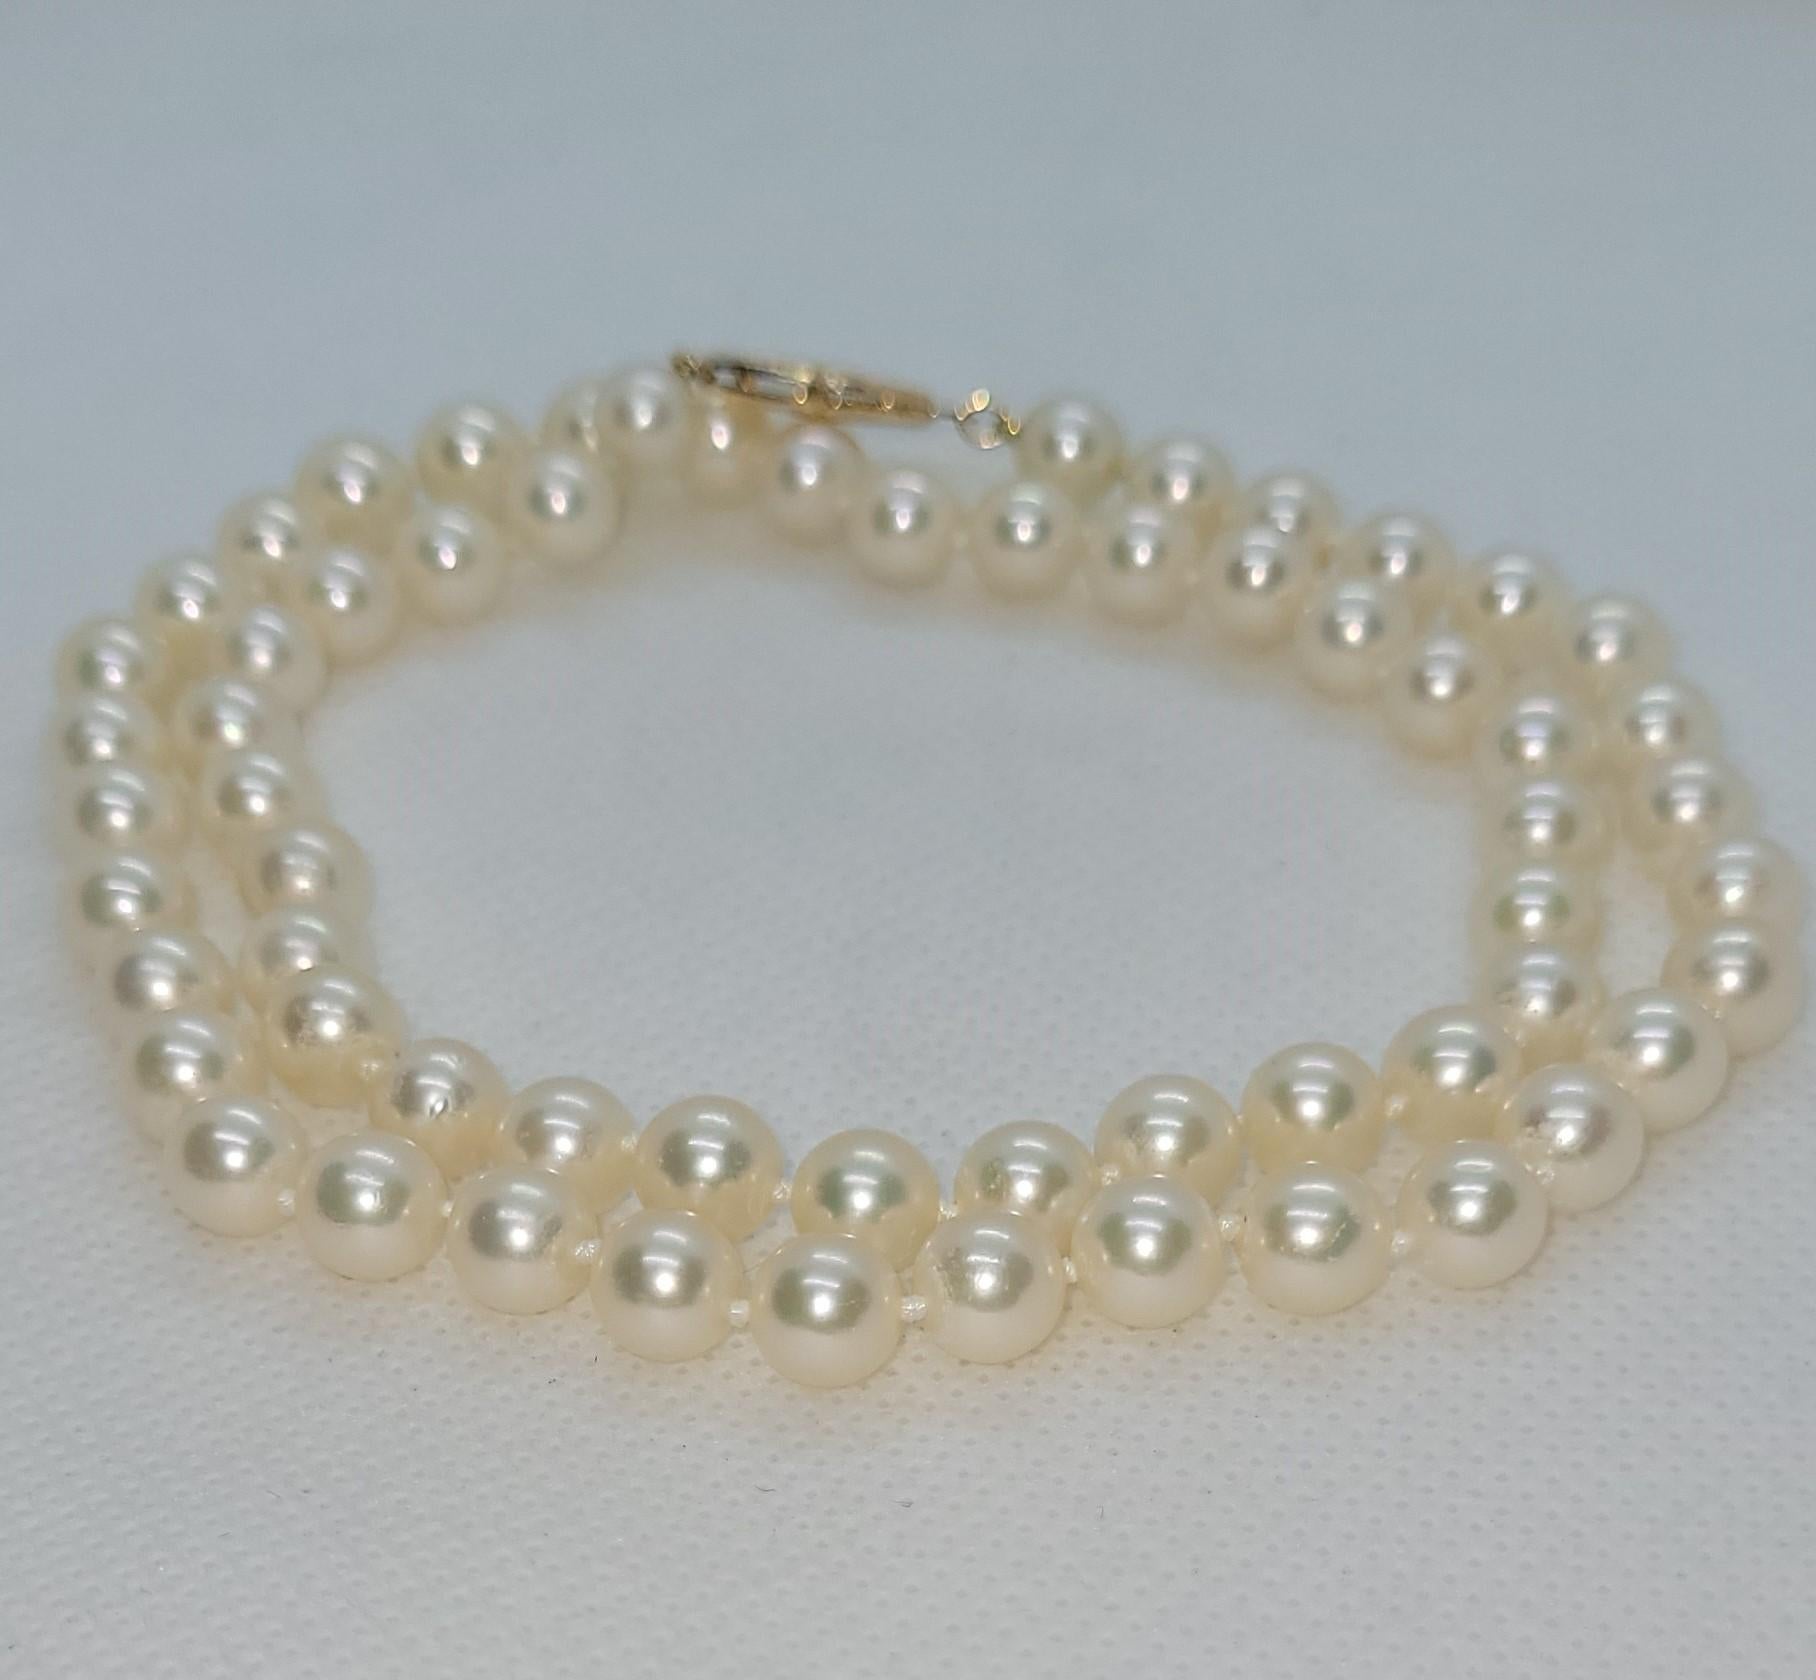 Dieser elegante 18-Zoll-Strang aus weißen Zuchtperlen ist eine zeitlose Ergänzung für jede Schmucksammlung. Jede Perle misst zarte 6,5 mm im Durchmesser und zeigt ihre klassische Schönheit. Die Perlen sind sauber und glänzend und strahlen einen